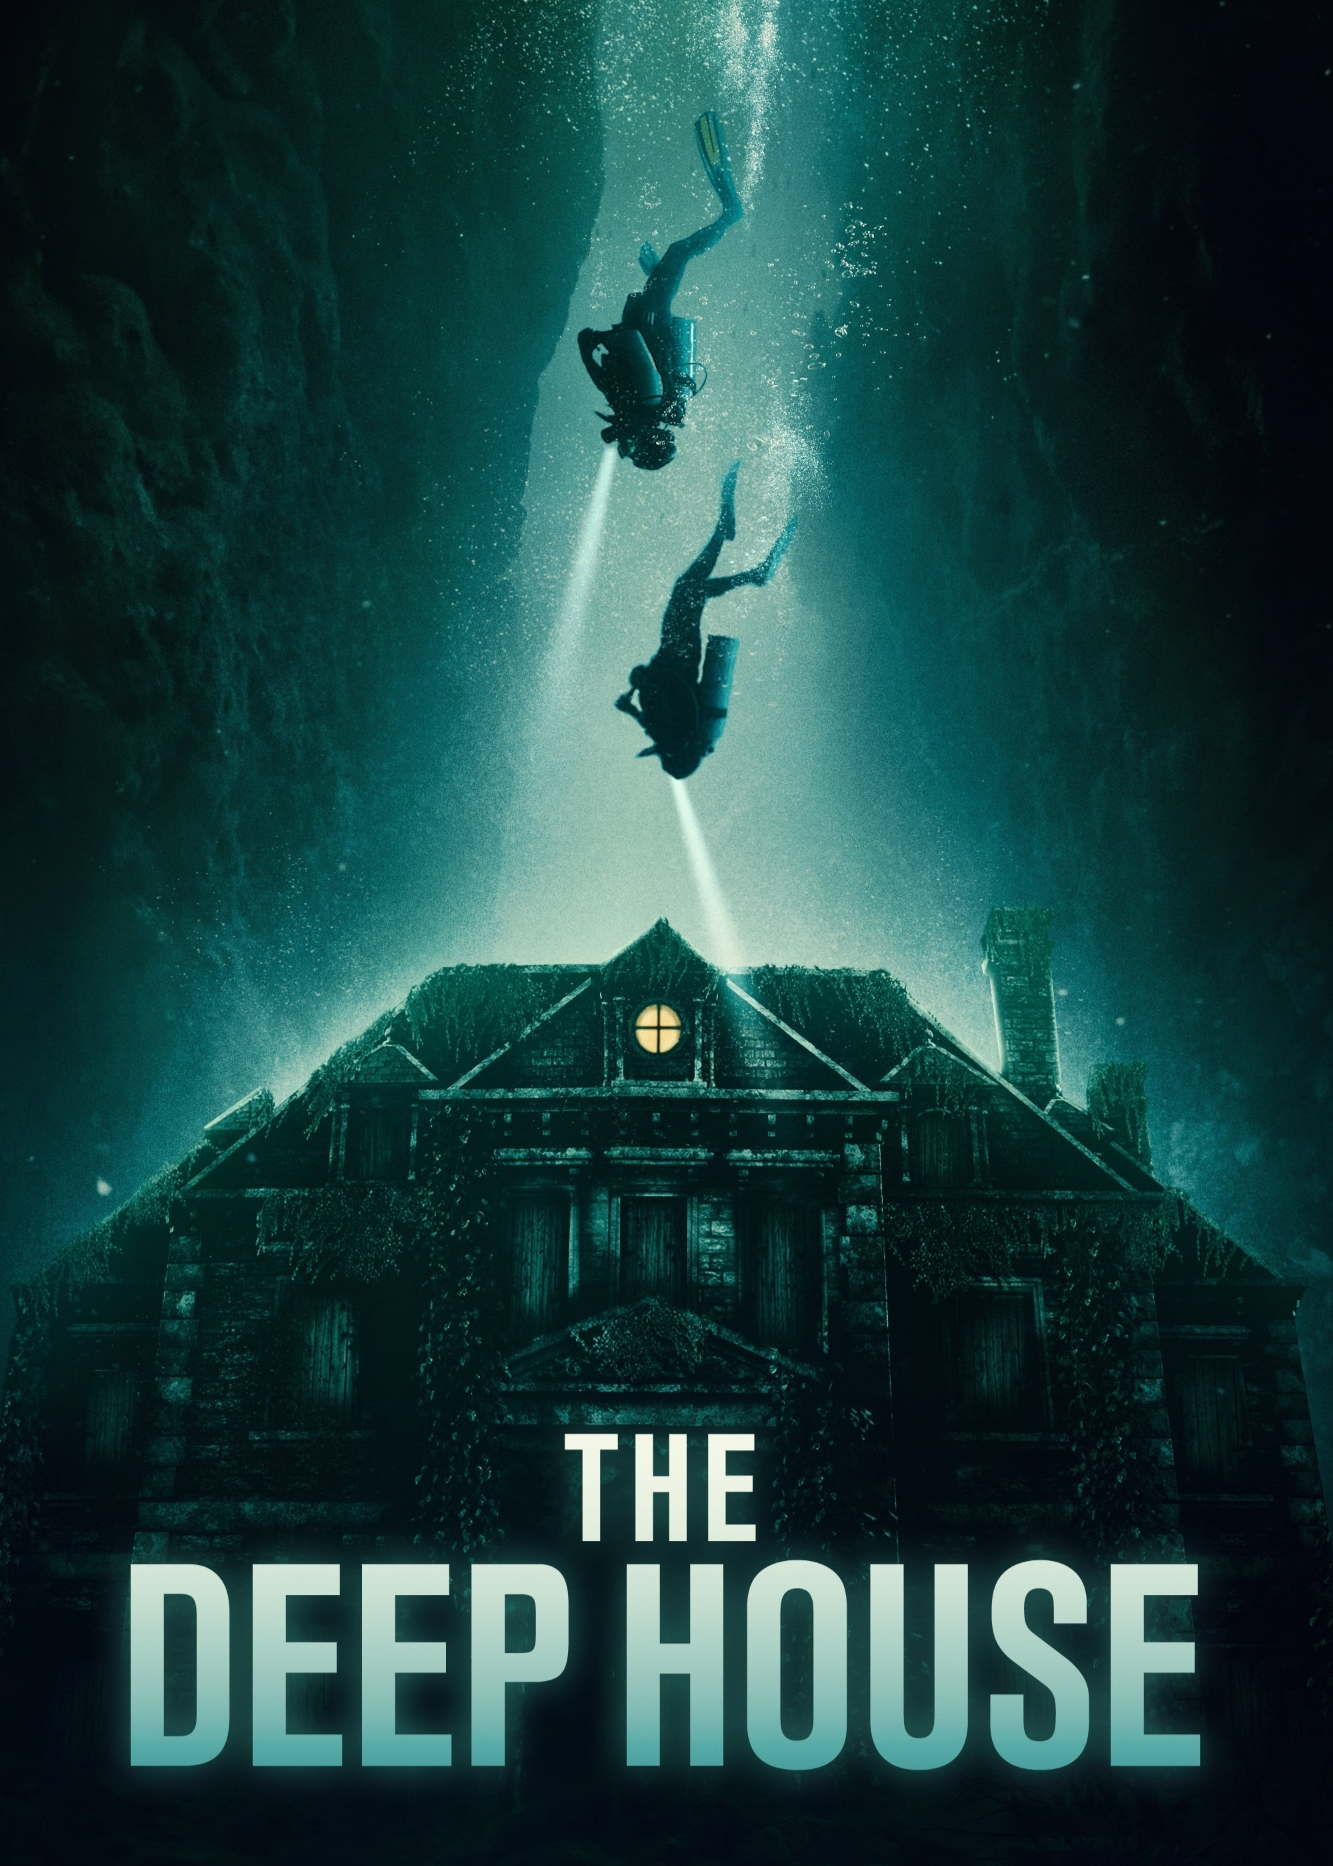 The Deep House - The Deep House